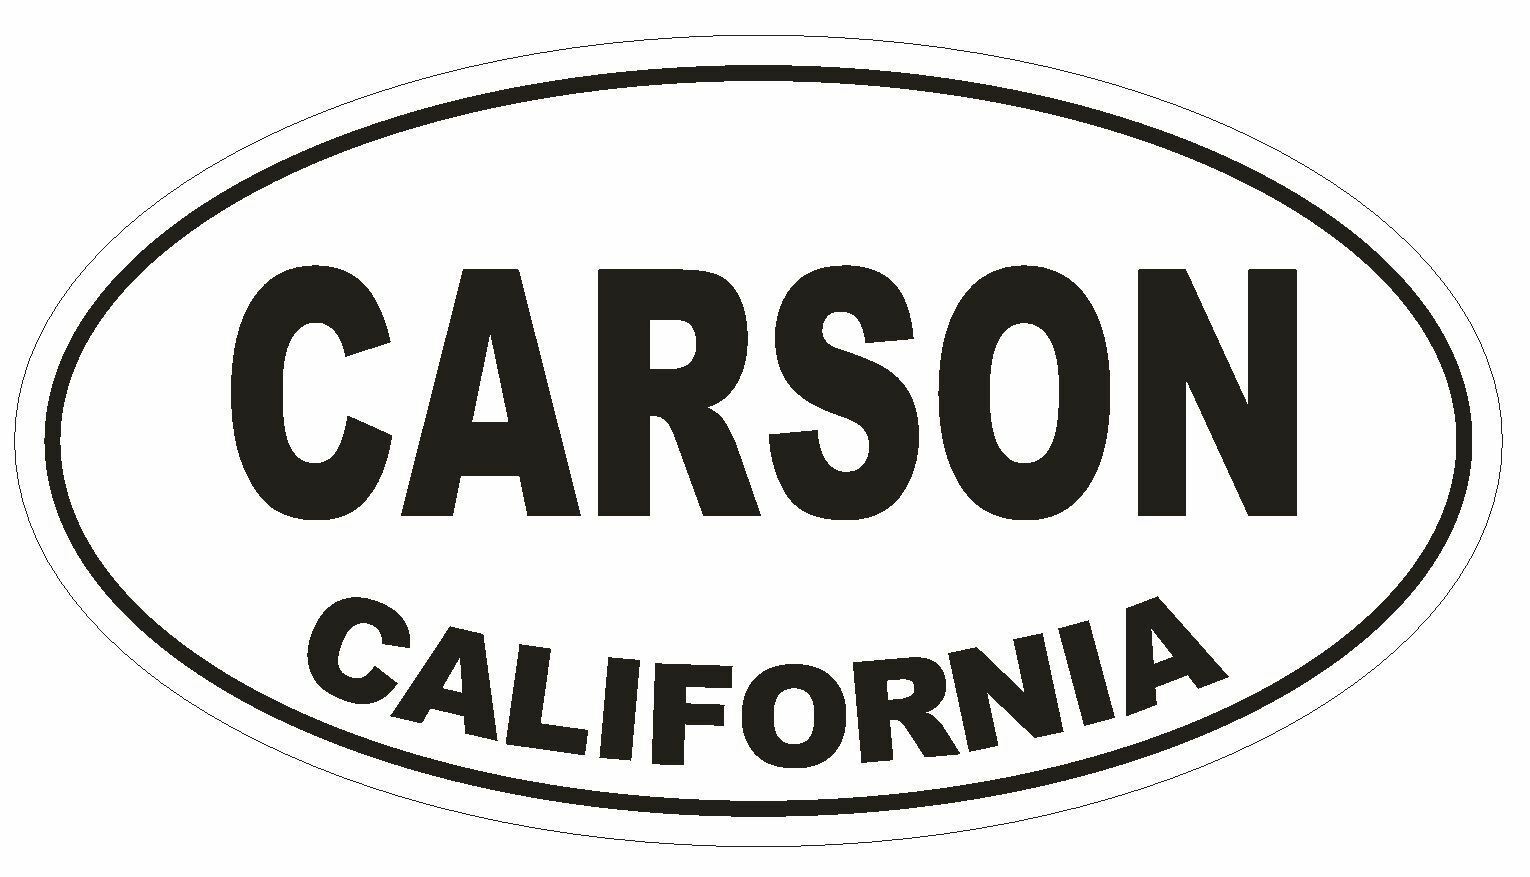 Carson California Oval Bumper Sticker or Helmet Sticker D2788 Euro Oval - $1.39 - $75.00